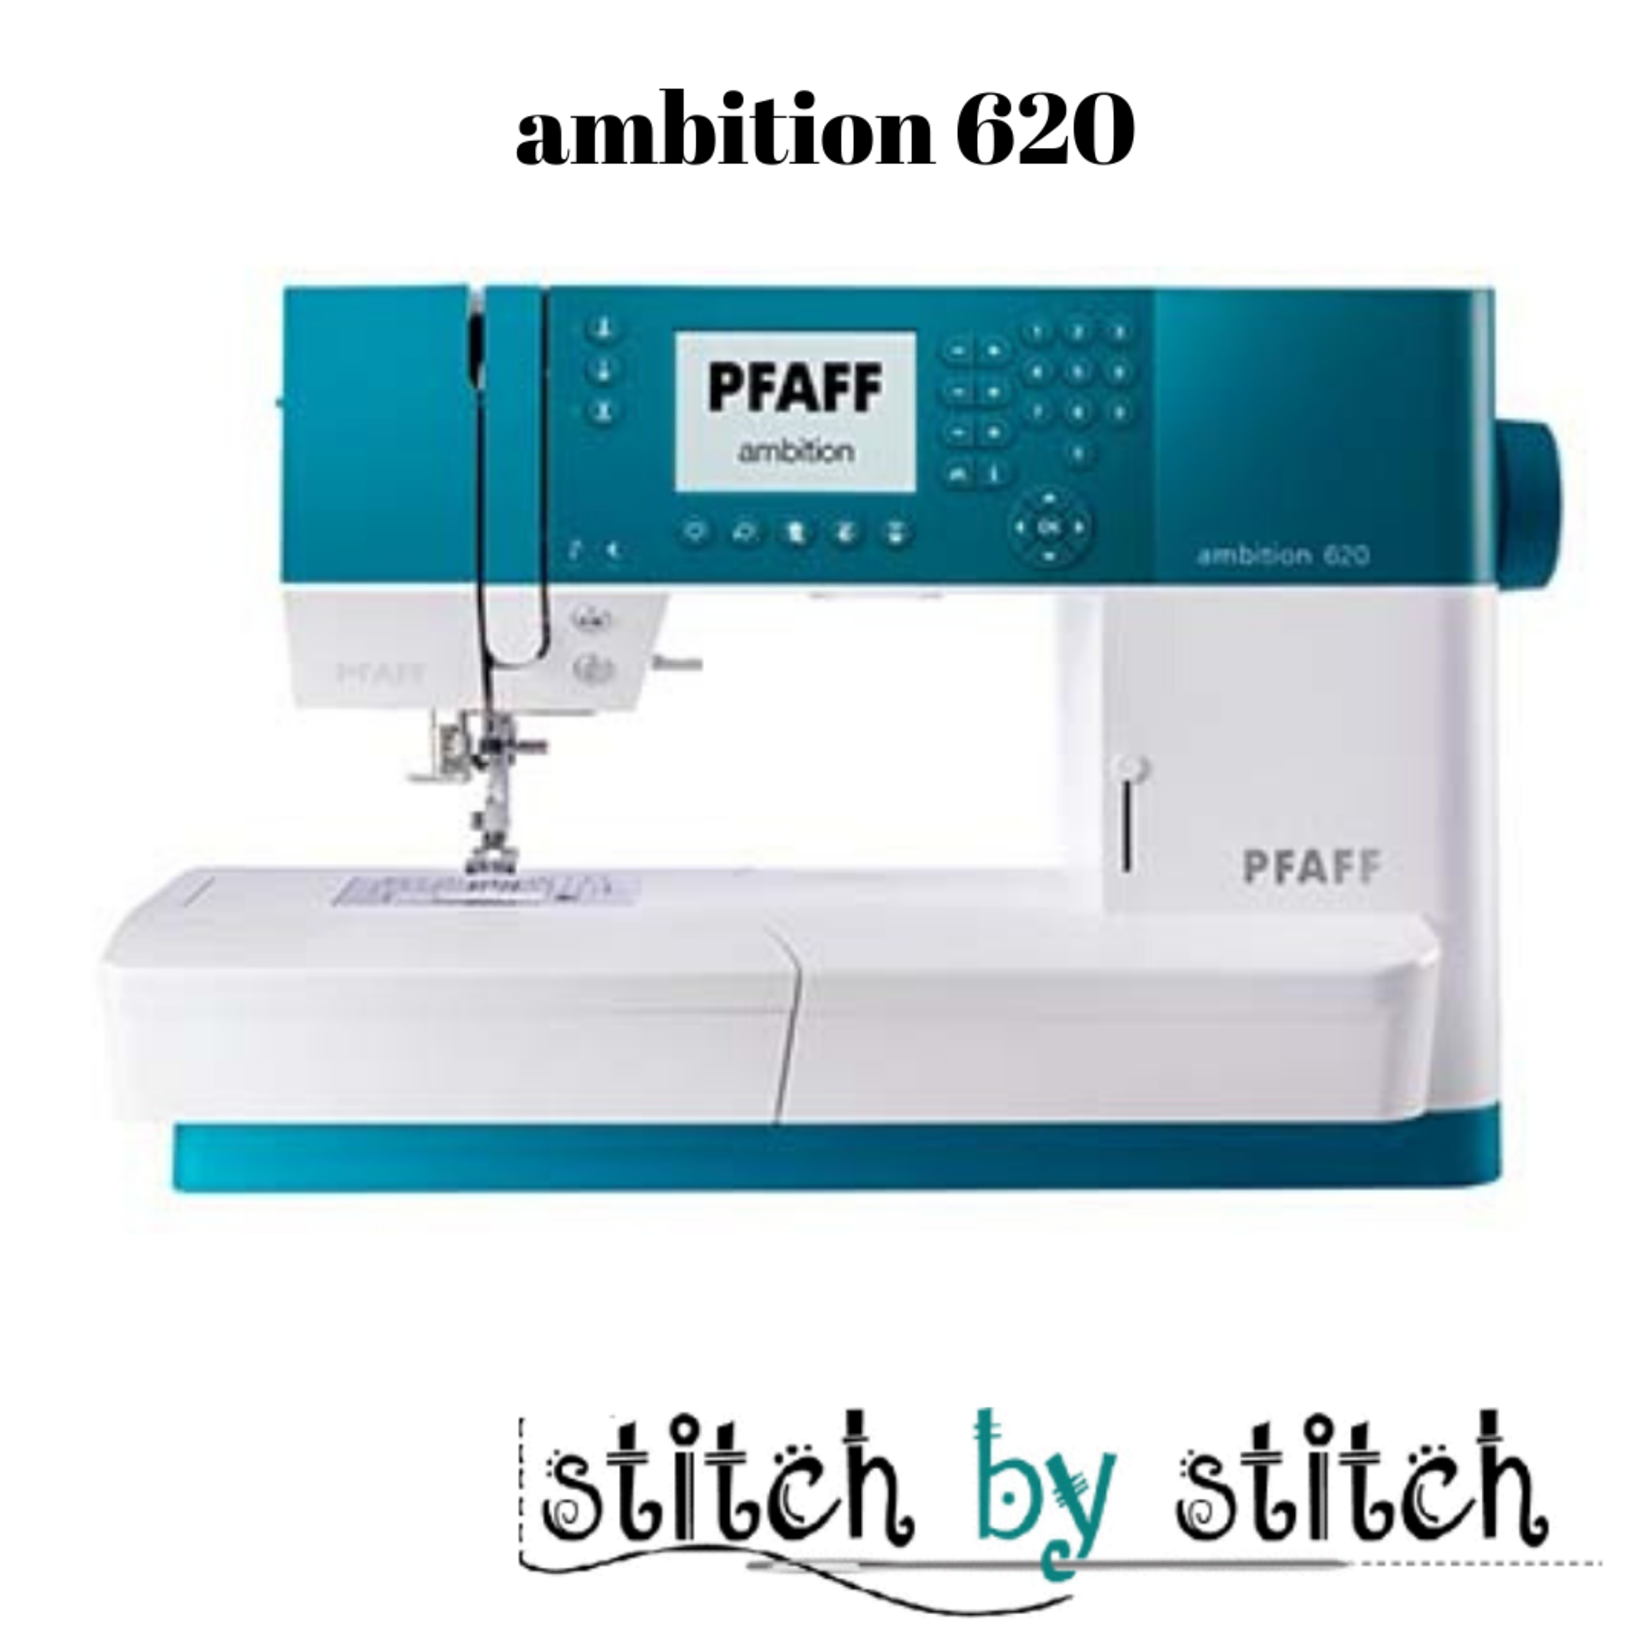 Pfaff ambition 620